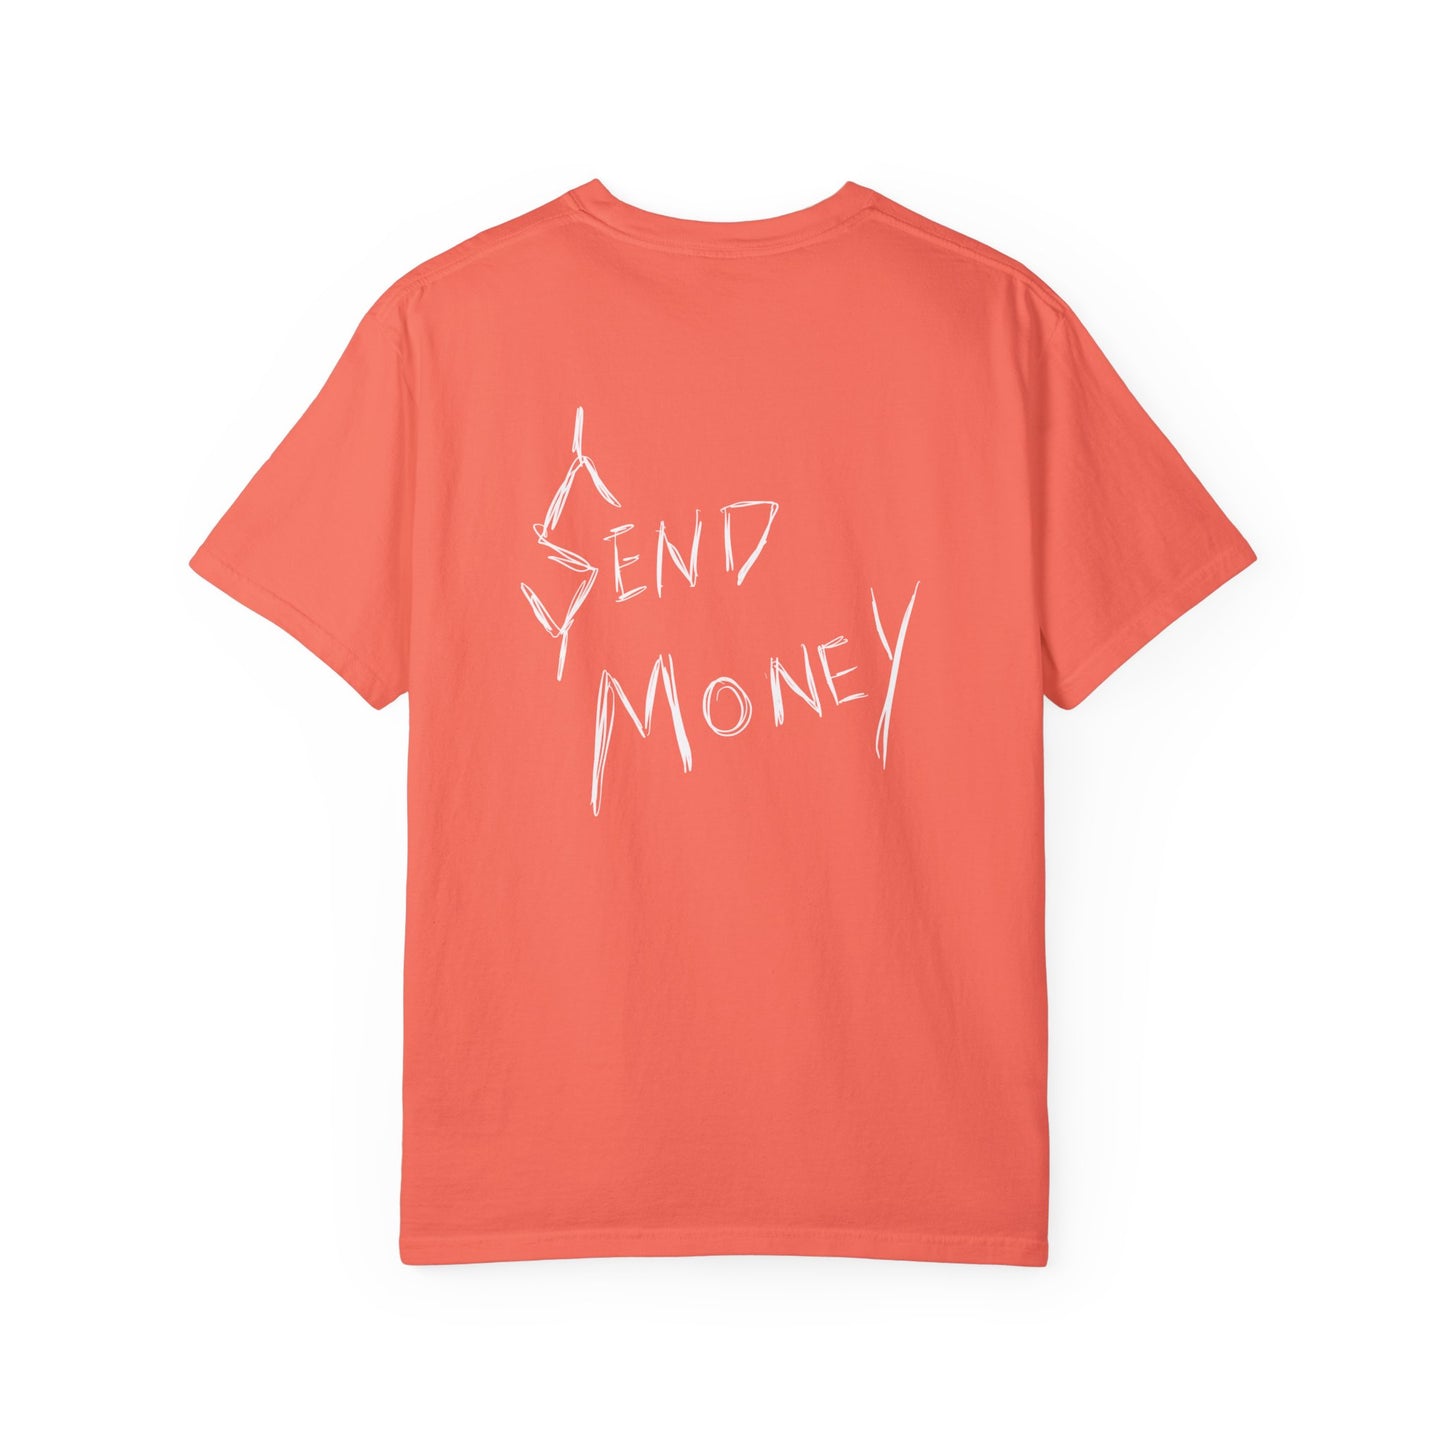 'Send Money' T-shirt